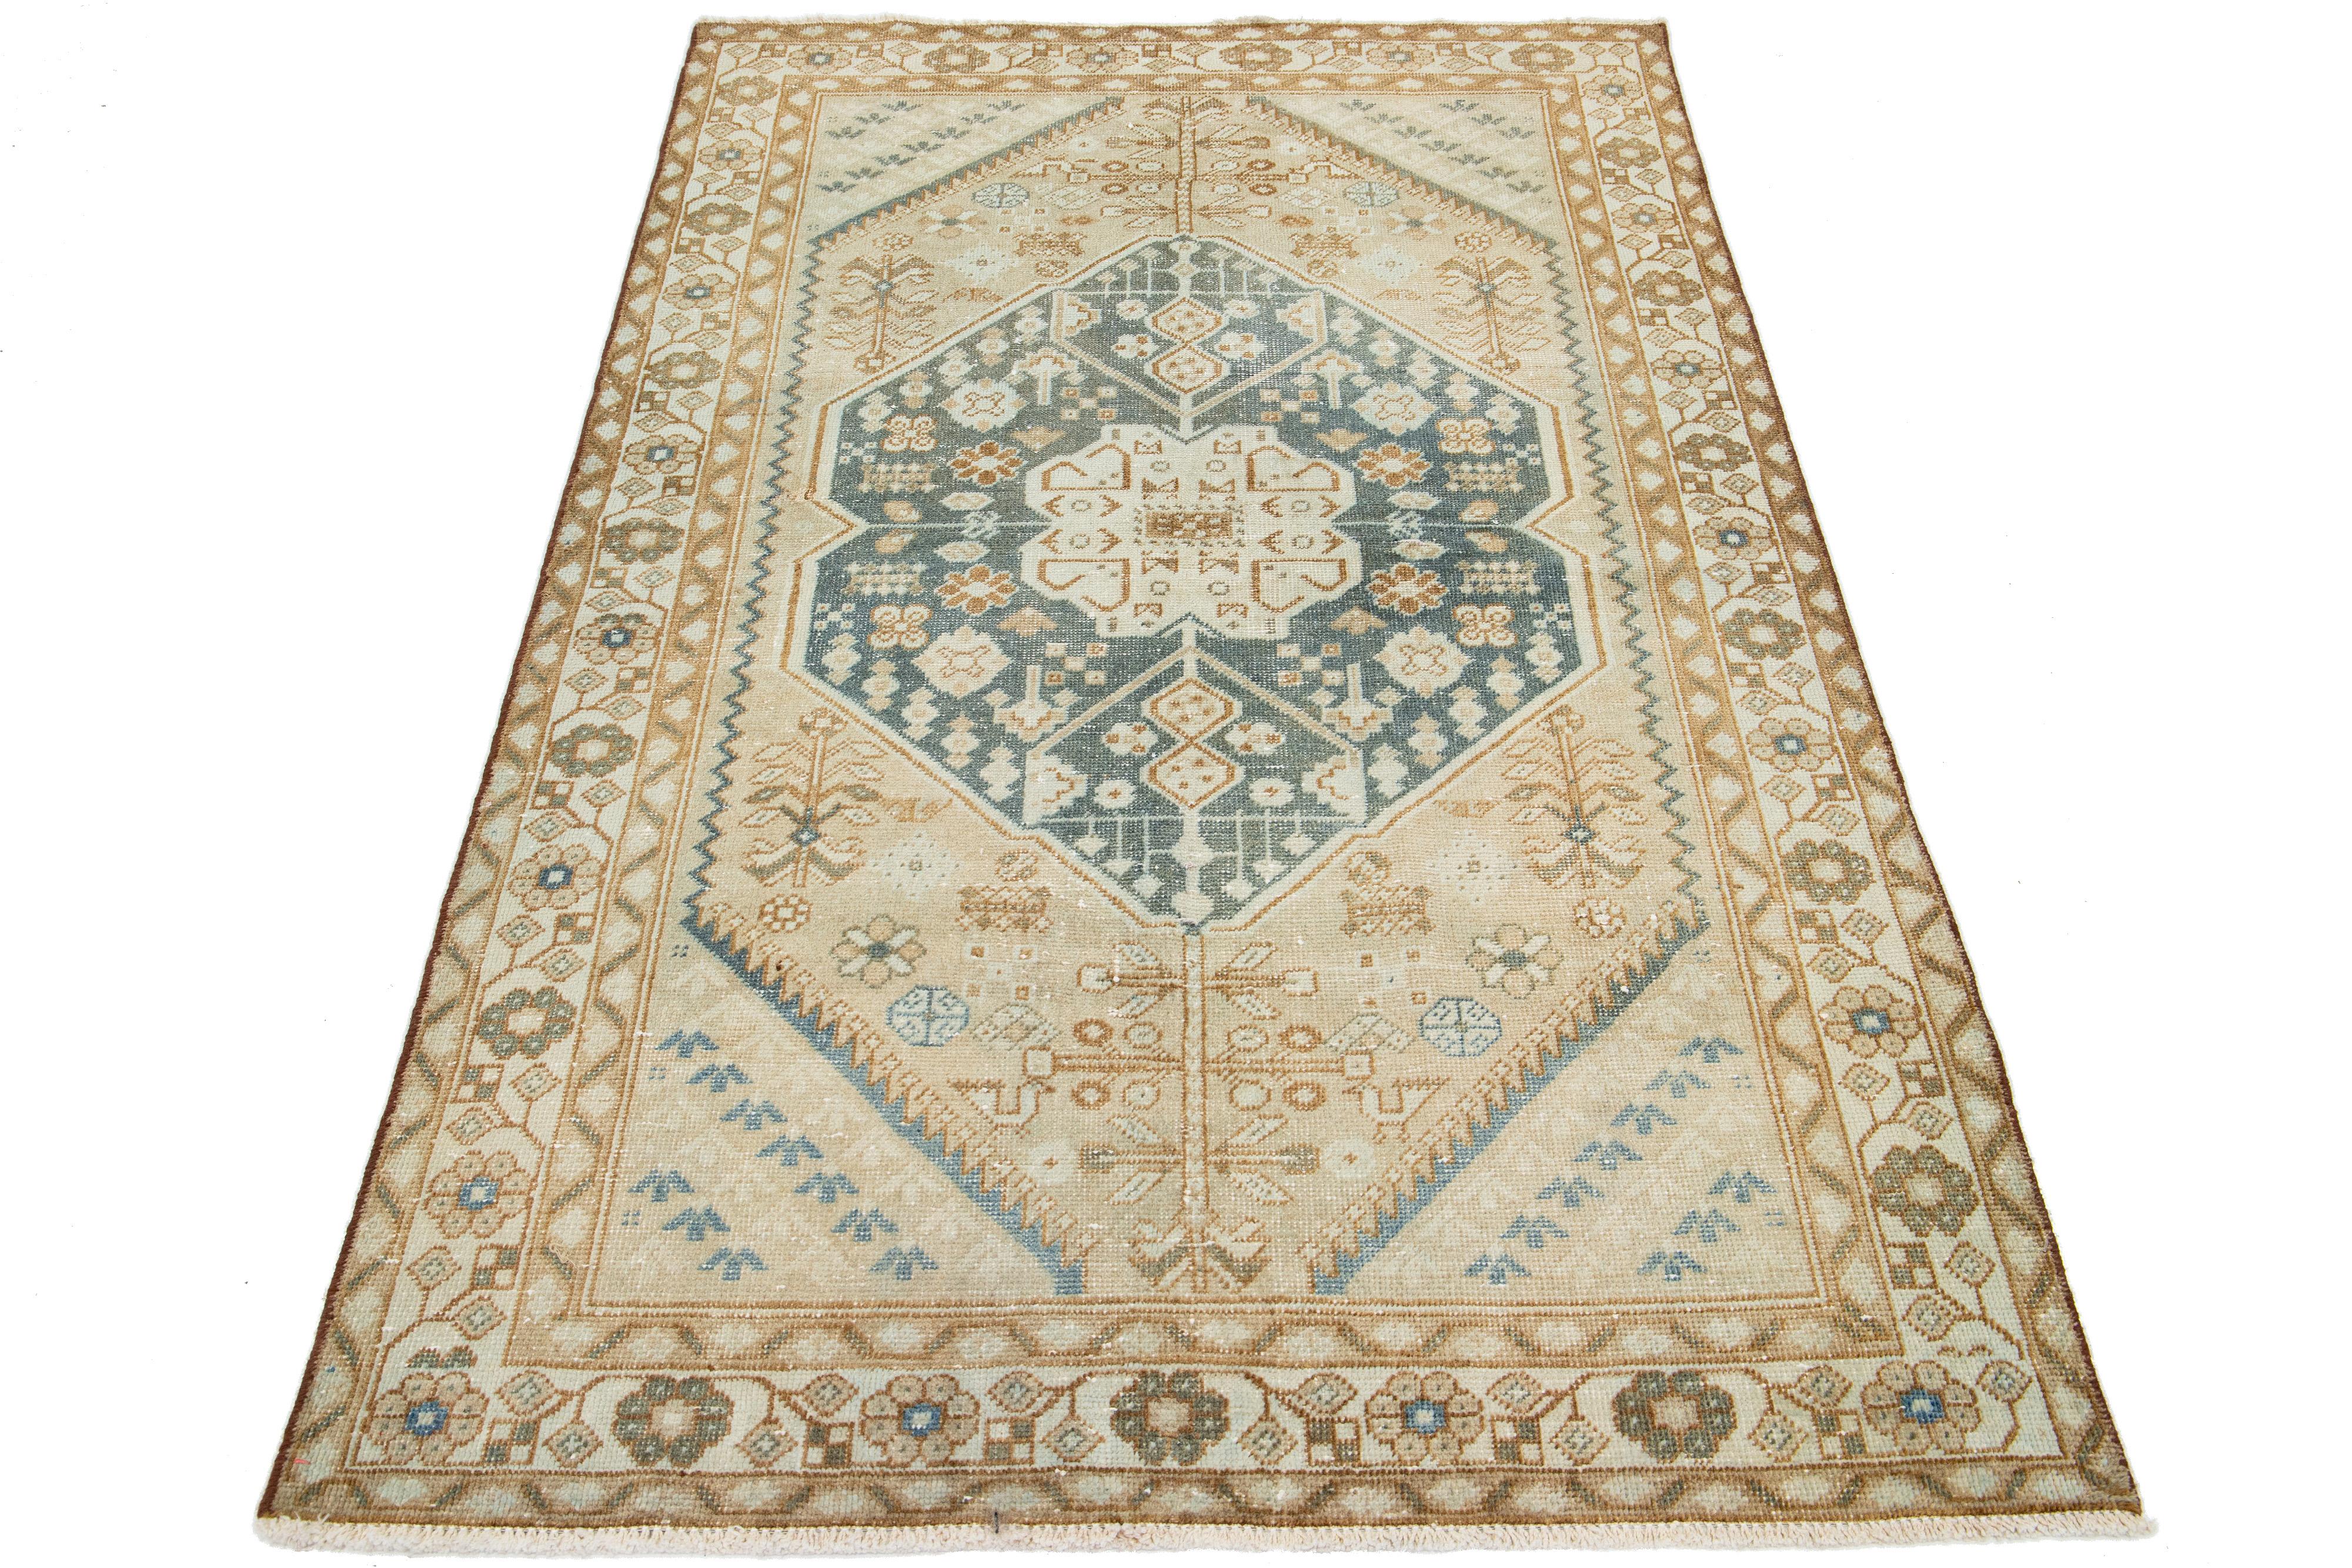 Ce tapis en laine présente un motif tribal aux accents bruns et bleus sur un fond beige inspiré des motifs persans de Shiraz.

Ce tapis mesure 4'2